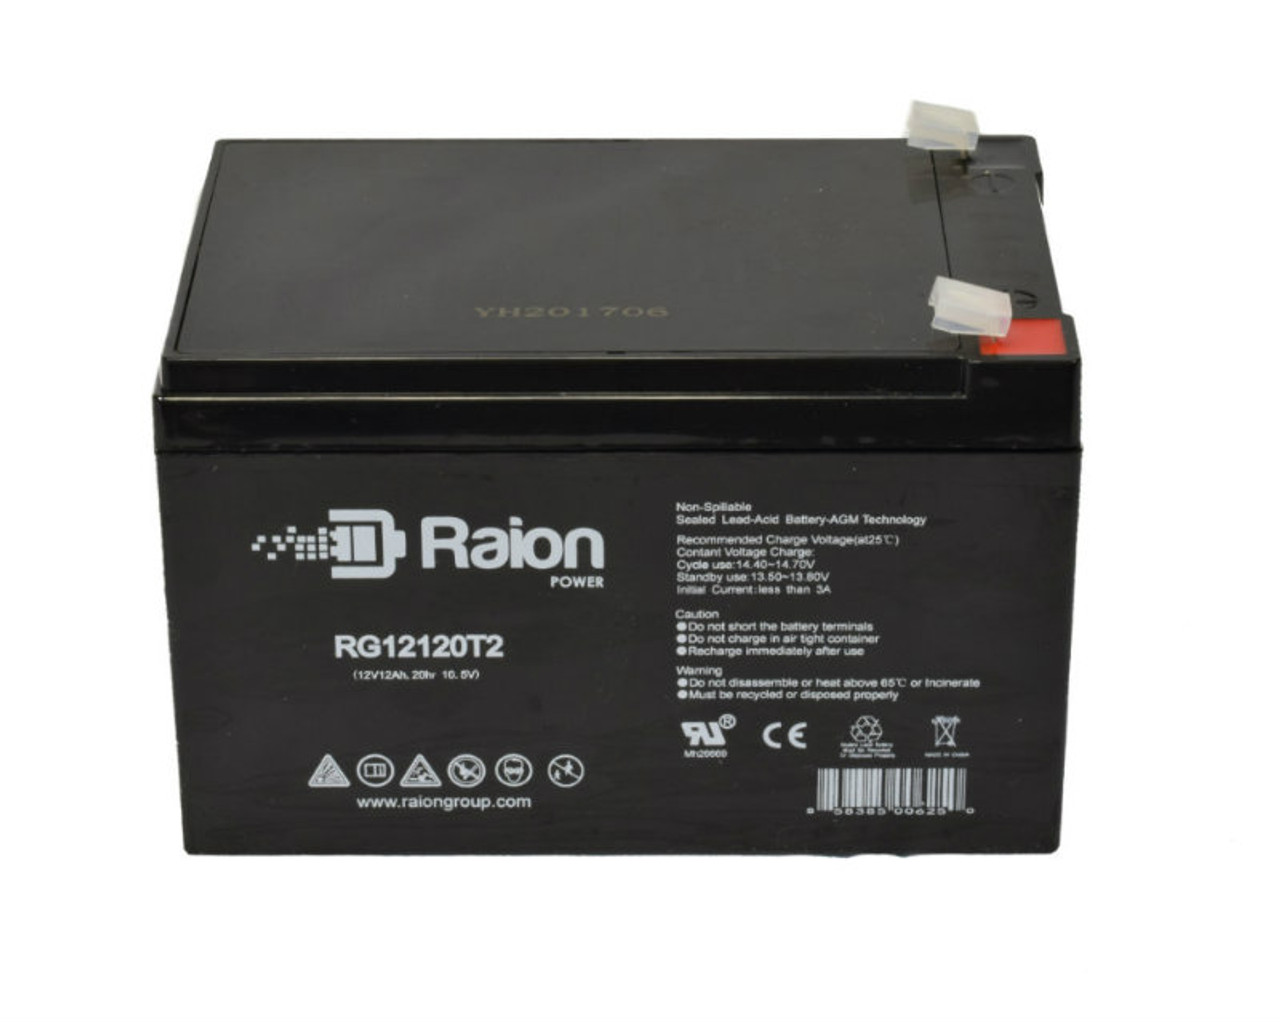 Raion Power RG12120T2 SLA Battery for Bosfa GB12-12